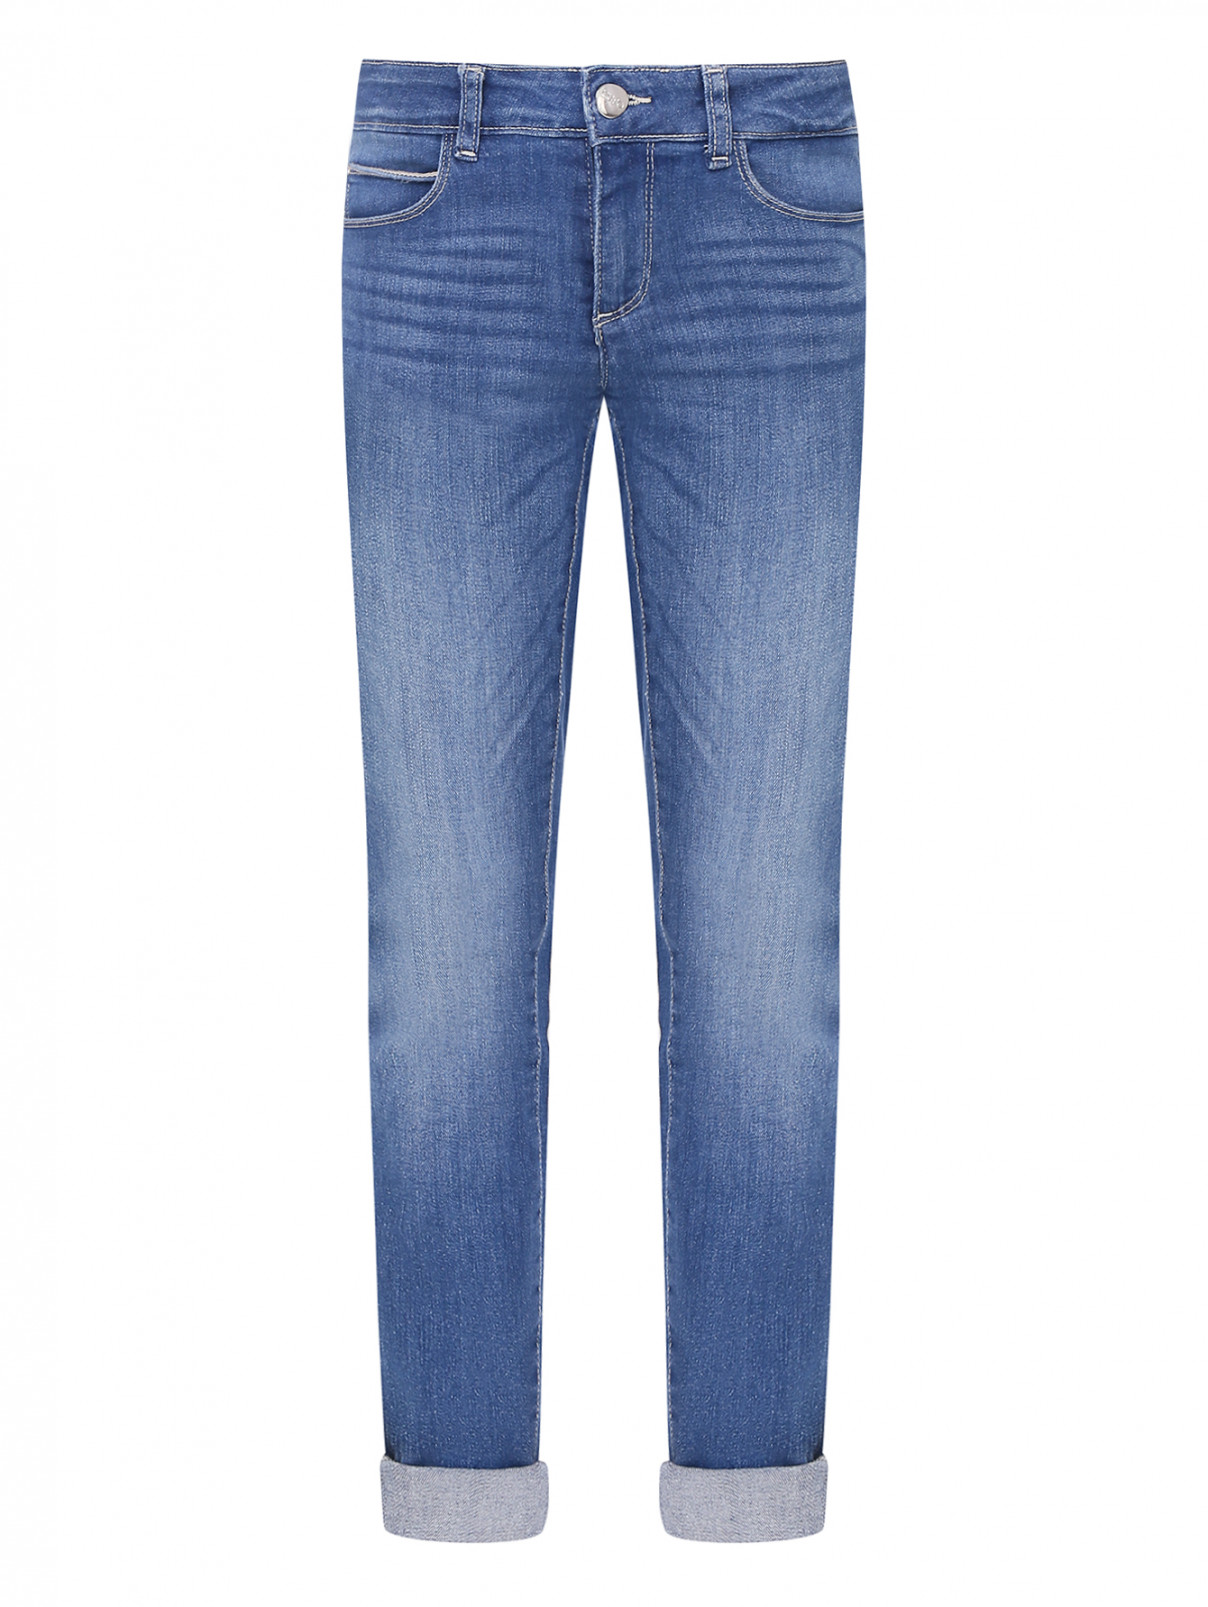 Зауженные джинсы с карманами Liu Jo  –  Общий вид  – Цвет:  Синий